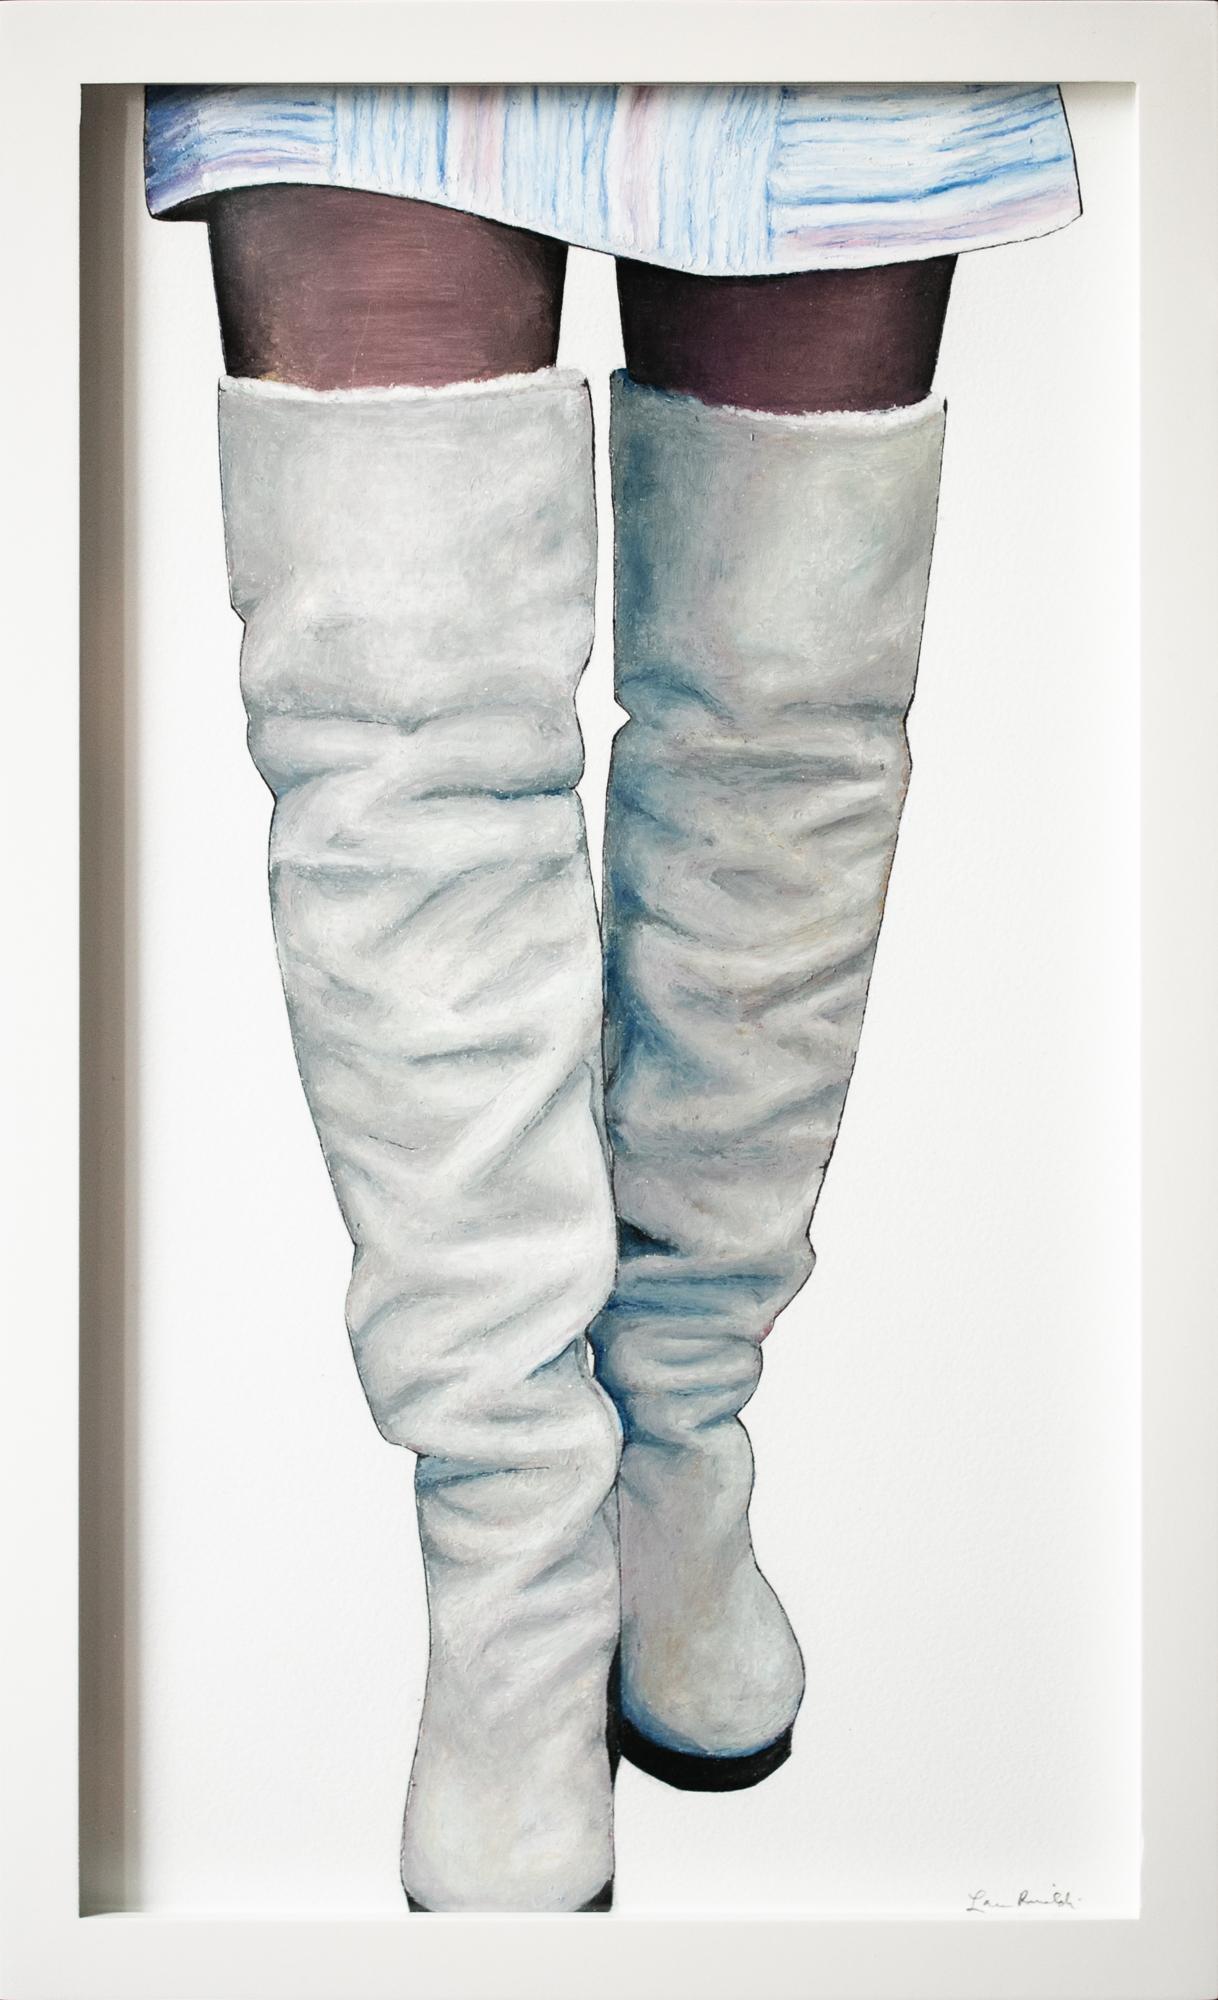 "Floored", dessin figuratif à l'huile au pastel représentant des jambes et des bottes, portrait